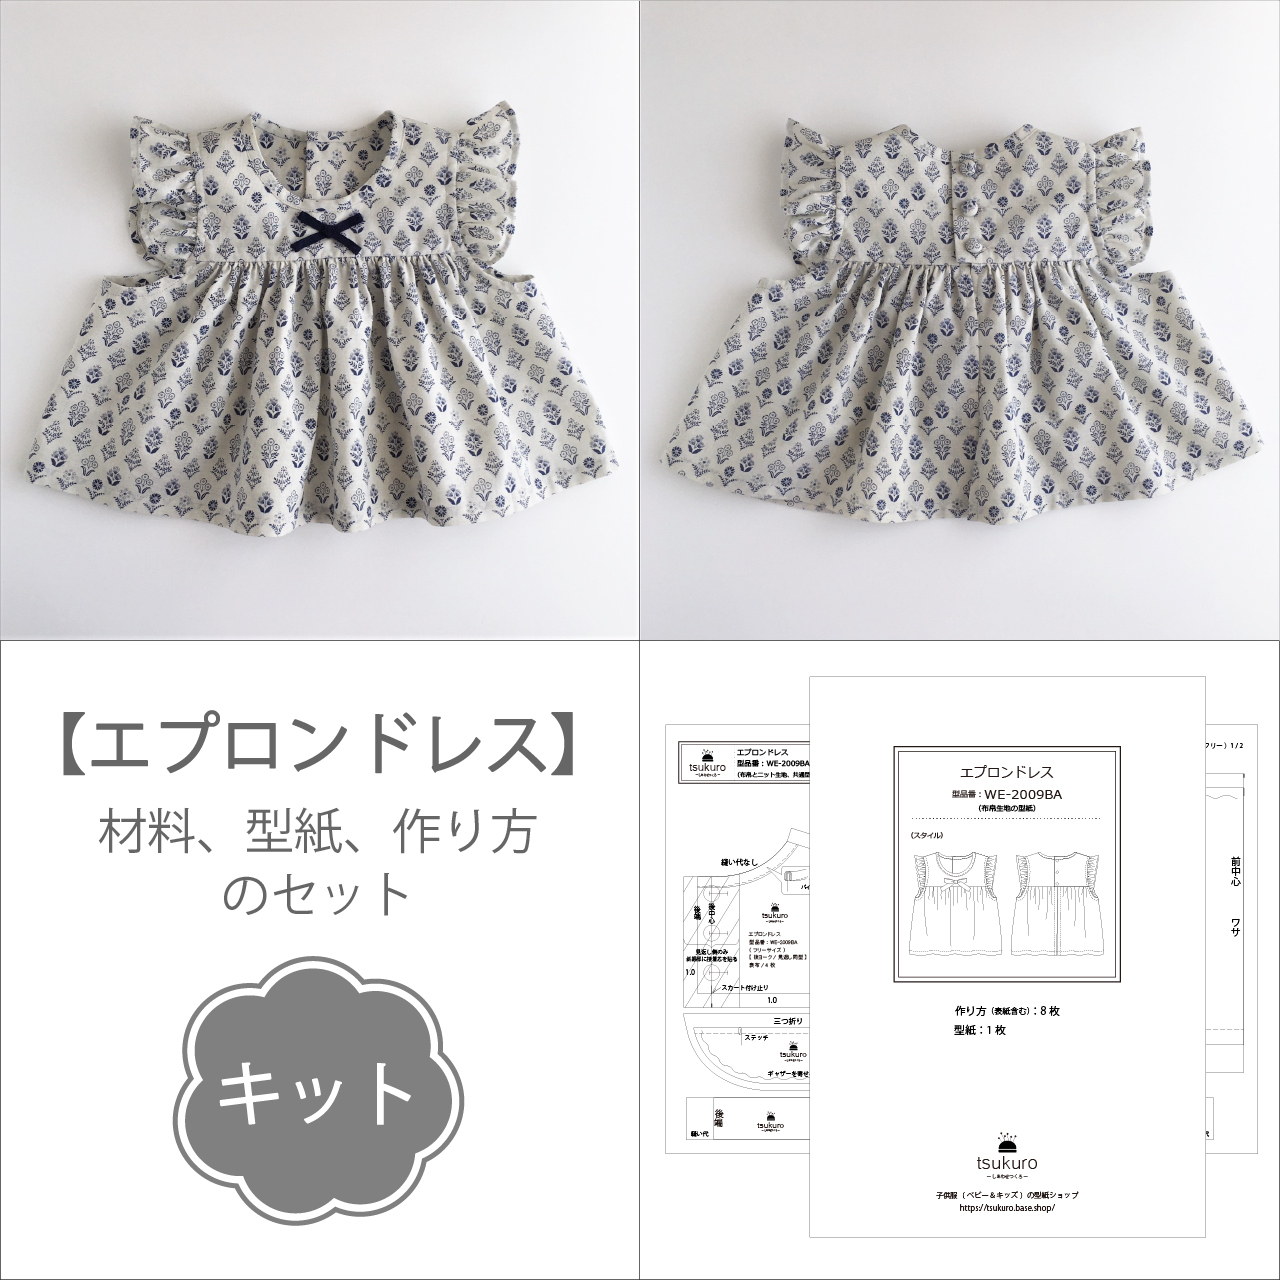 キット エプロンドレス 材料と型紙と作り方のセット Kit 32 子供服の型紙ショップ Tsukuro ツクロ